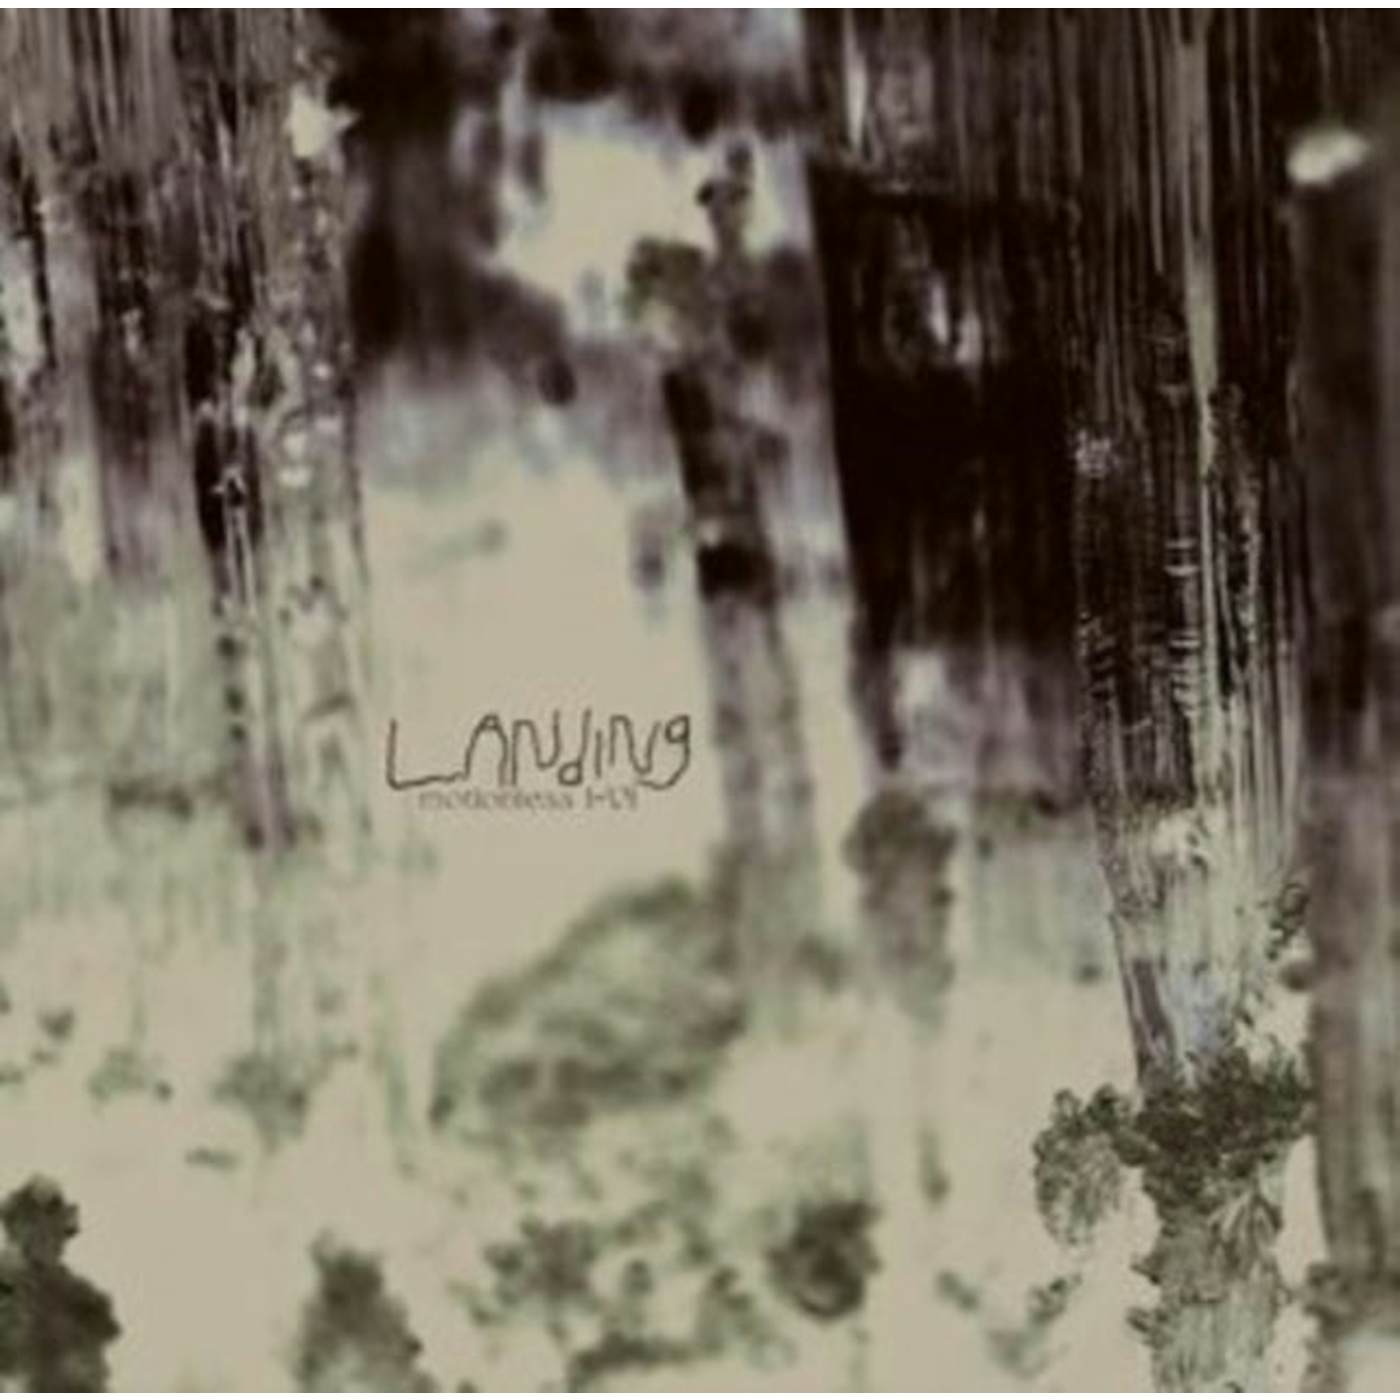 Landing LP - Motionless I-Vi (Vinyl)